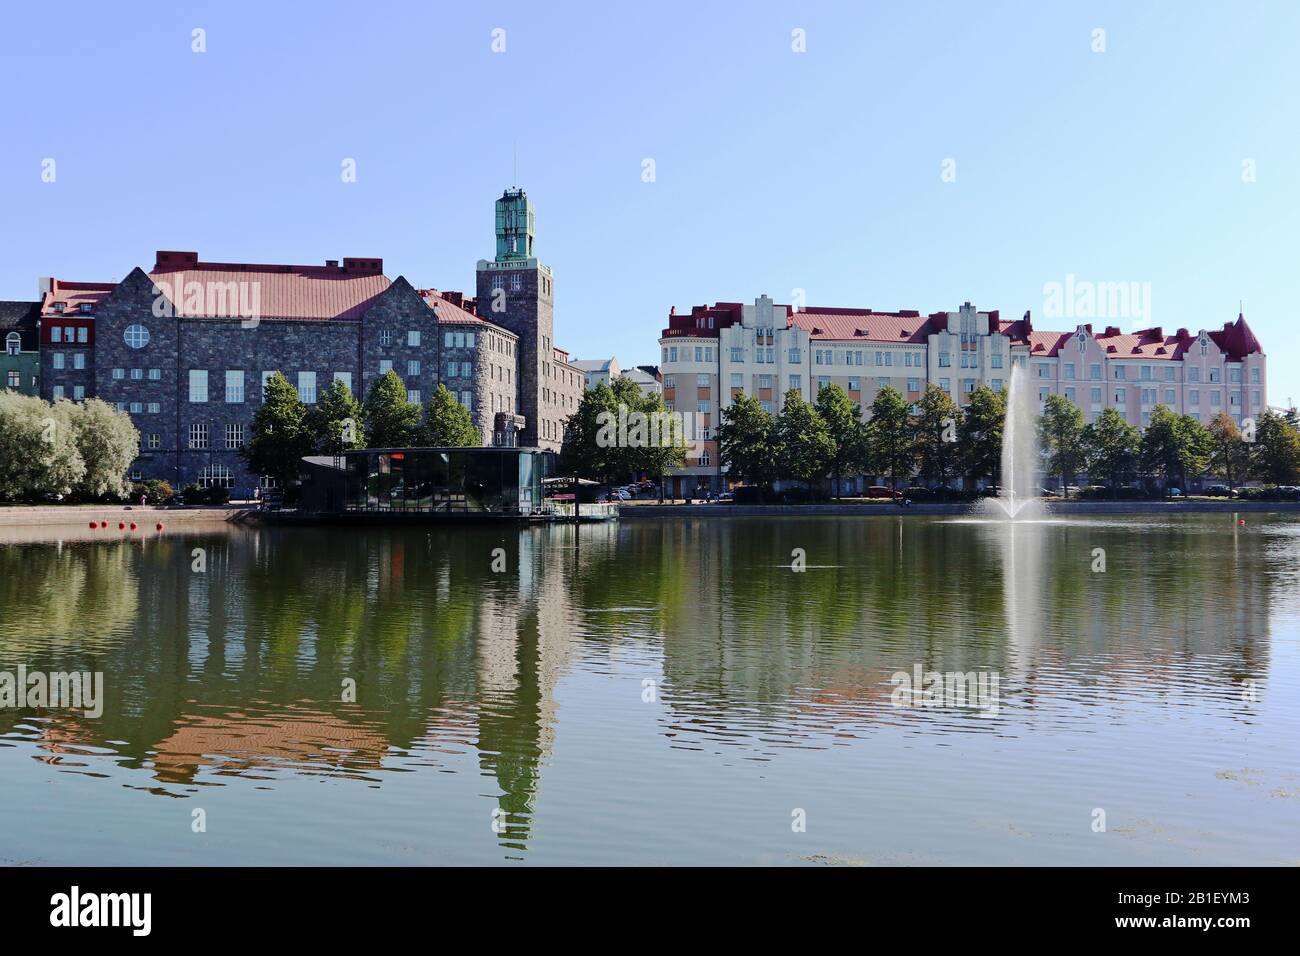 Der See in der Innenstadt von Helsinki mit Spiegelung auf Wasser, Bootsstation, Springbrunnen und sonnigen blauen Himmel reist nach Skandinavien Stockfoto